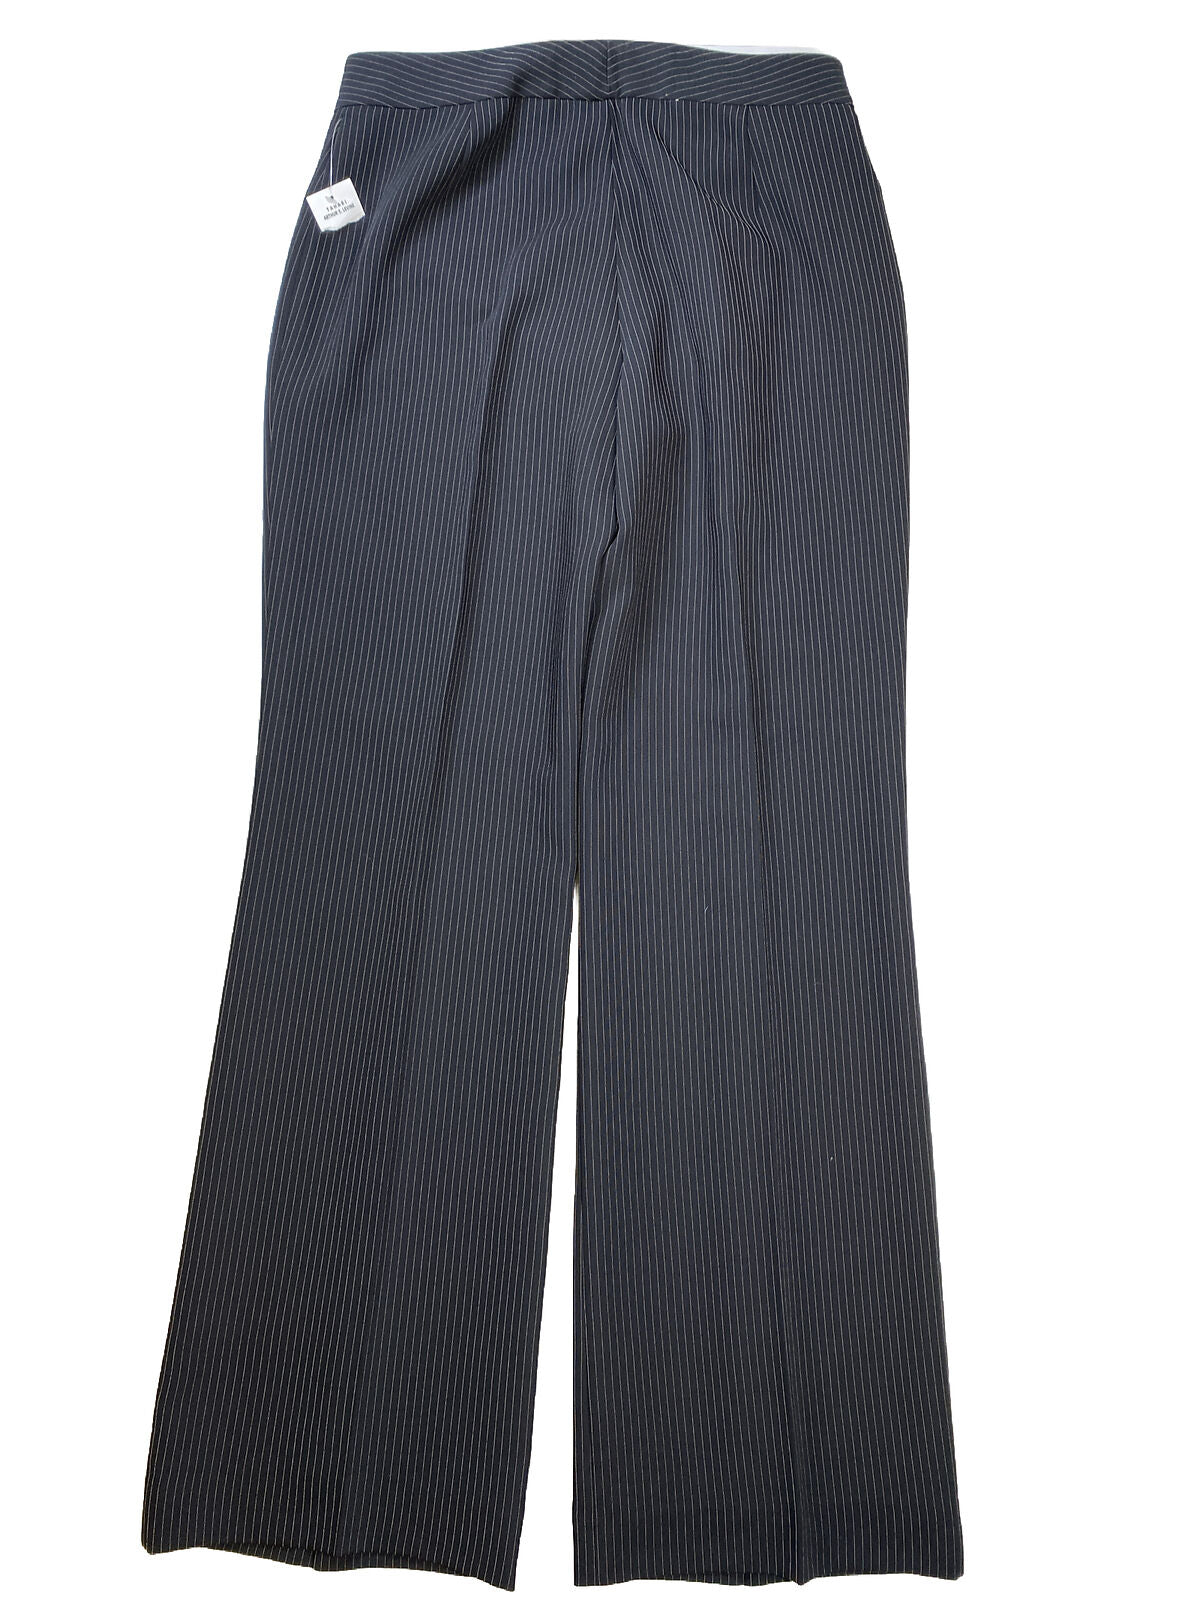 NEW Tahari Women's Black Striped Dress Pants - 10